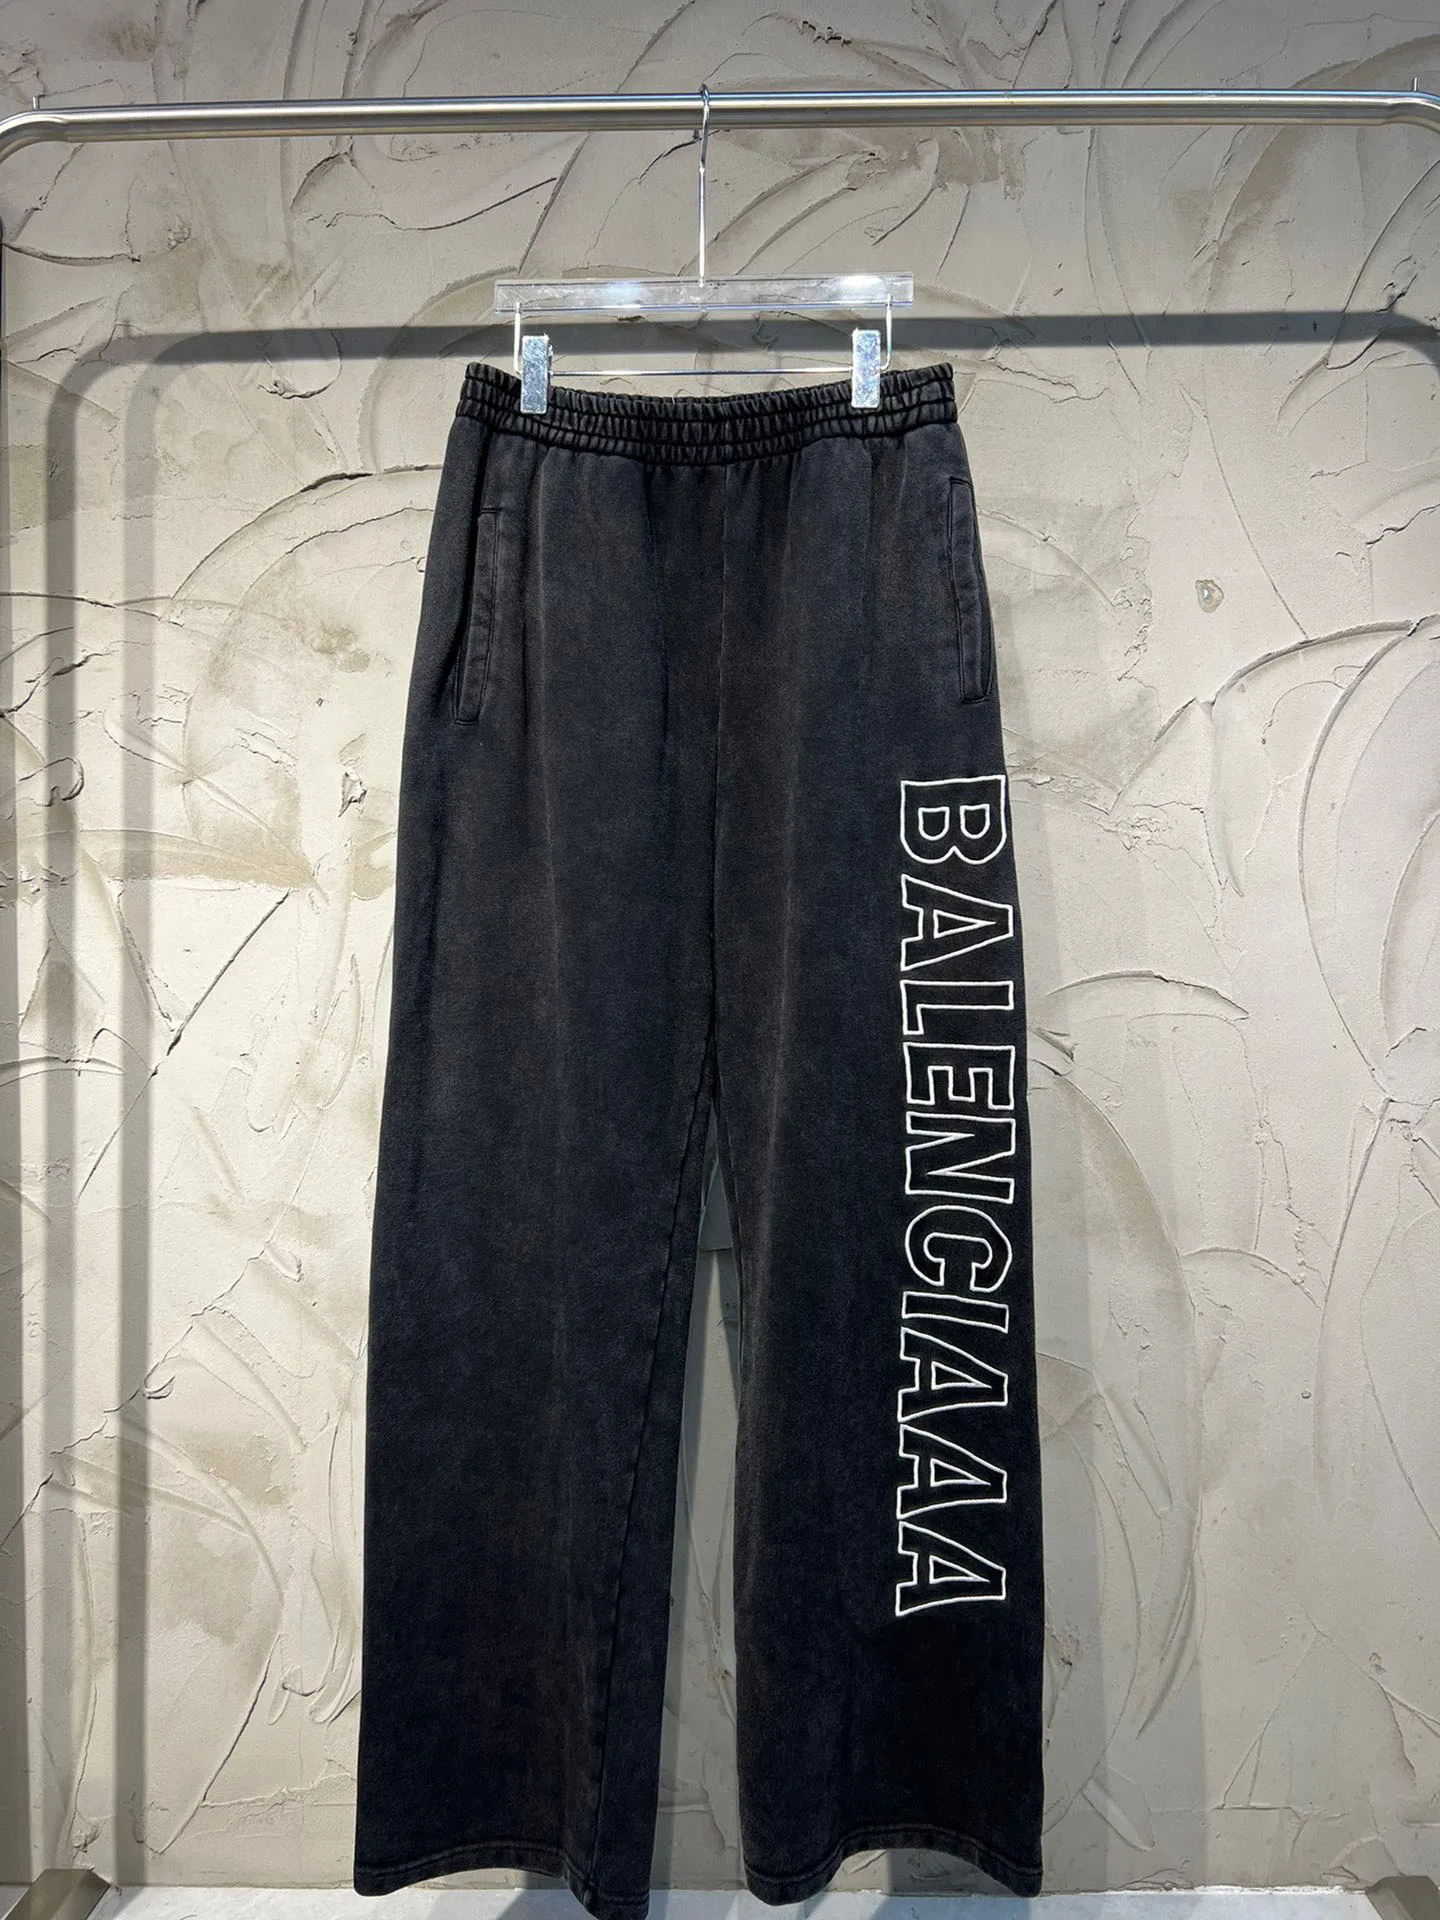 Paris Pant's Men's Plus Size Polanciagas Pants Wysoka jakość indygo indygo mała ilość cena hurtowa japońska bawełna Japan Red 6078